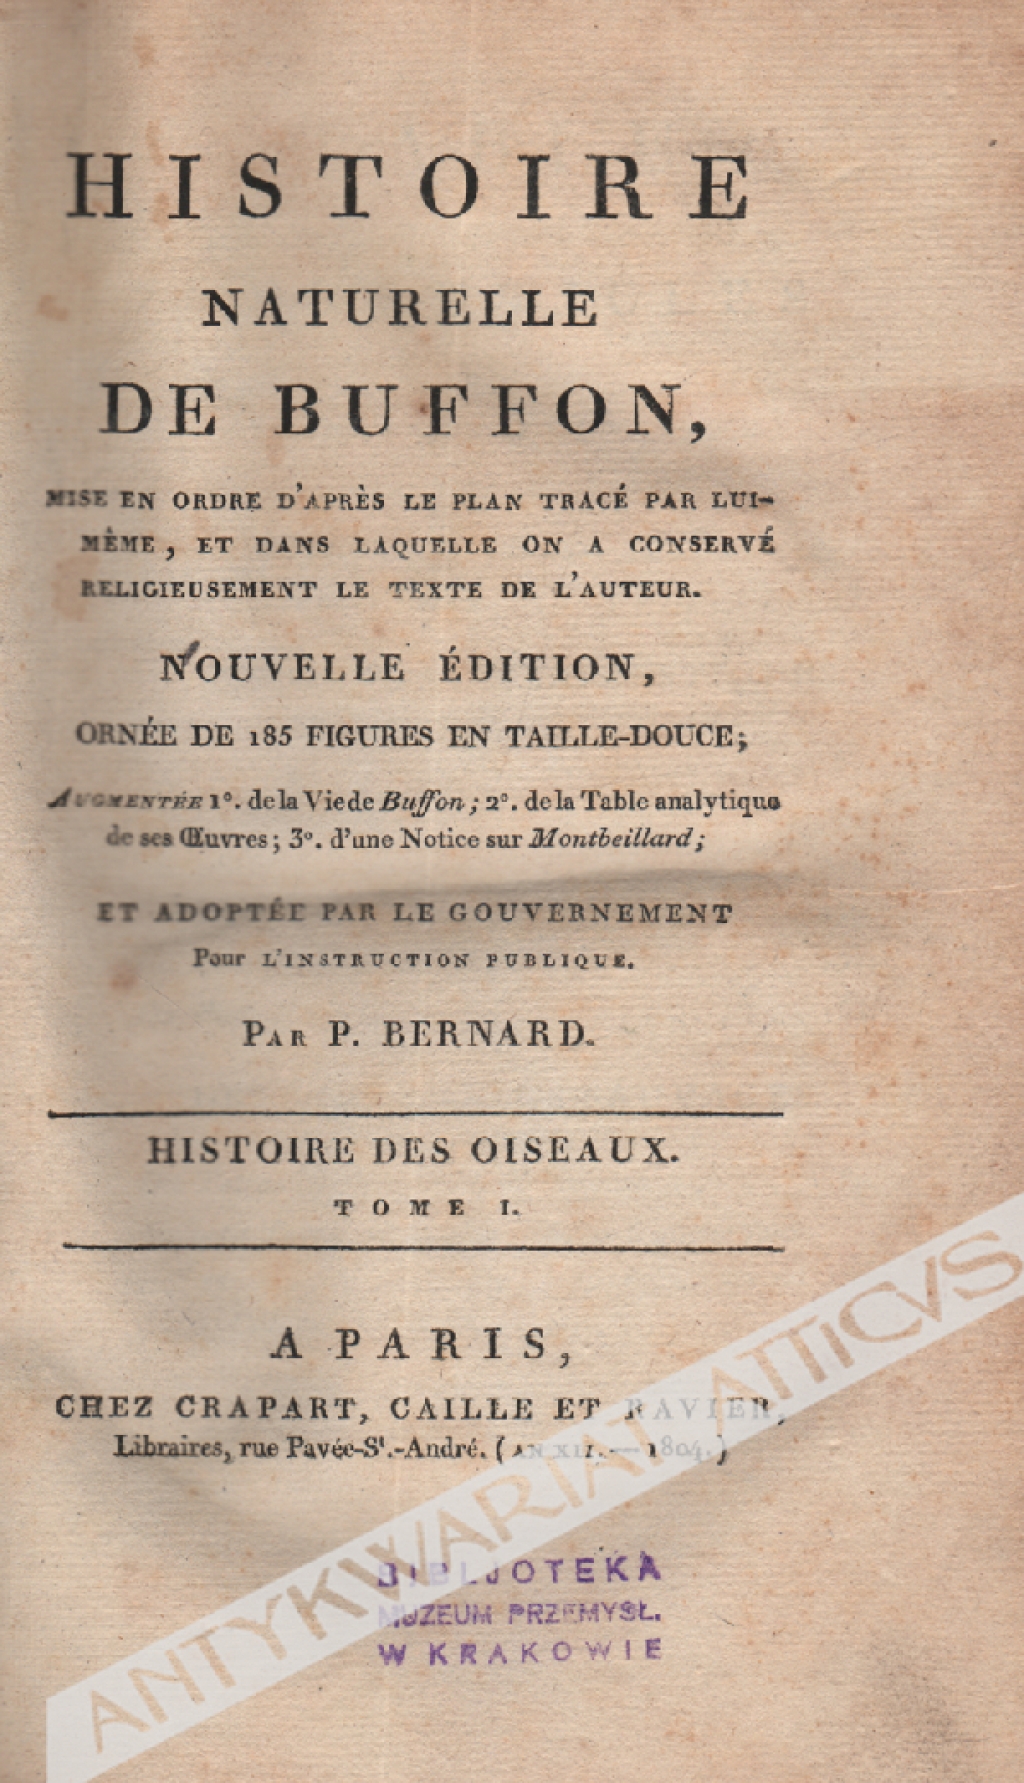 Histoire naturelle de Buffon: Histoire des Oiseaux, tome I